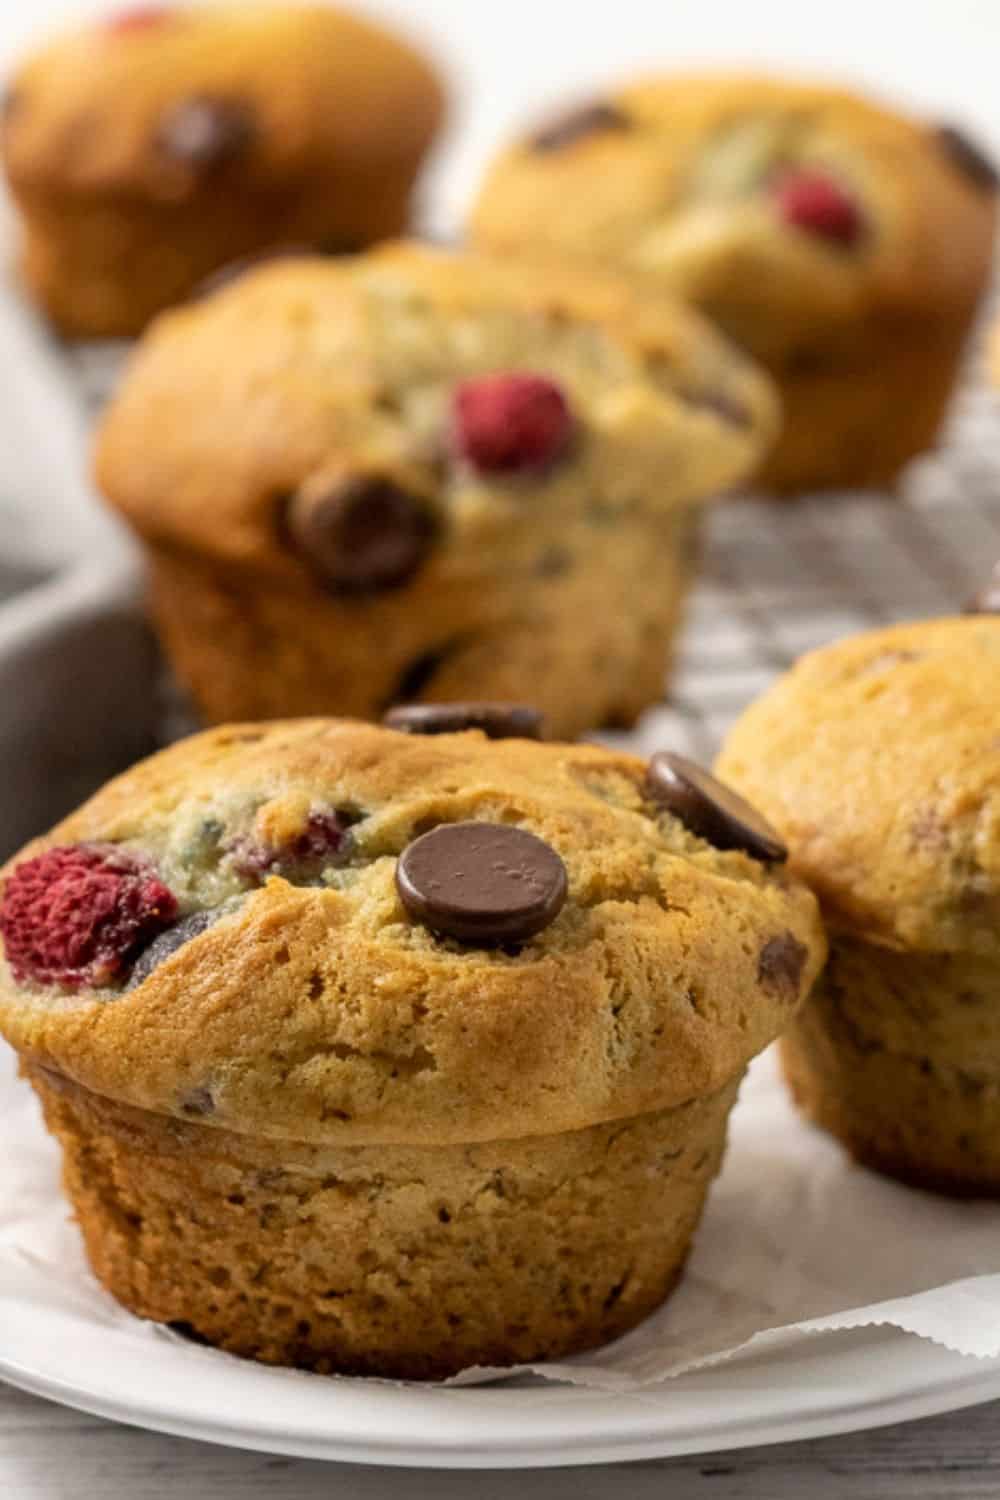 https://zonacooks.com/wp-content/uploads/2019/08/Raspberry-Dark-Chocolate-Banana-Bread-Muffins-Recipe-for-Two-25.jpg